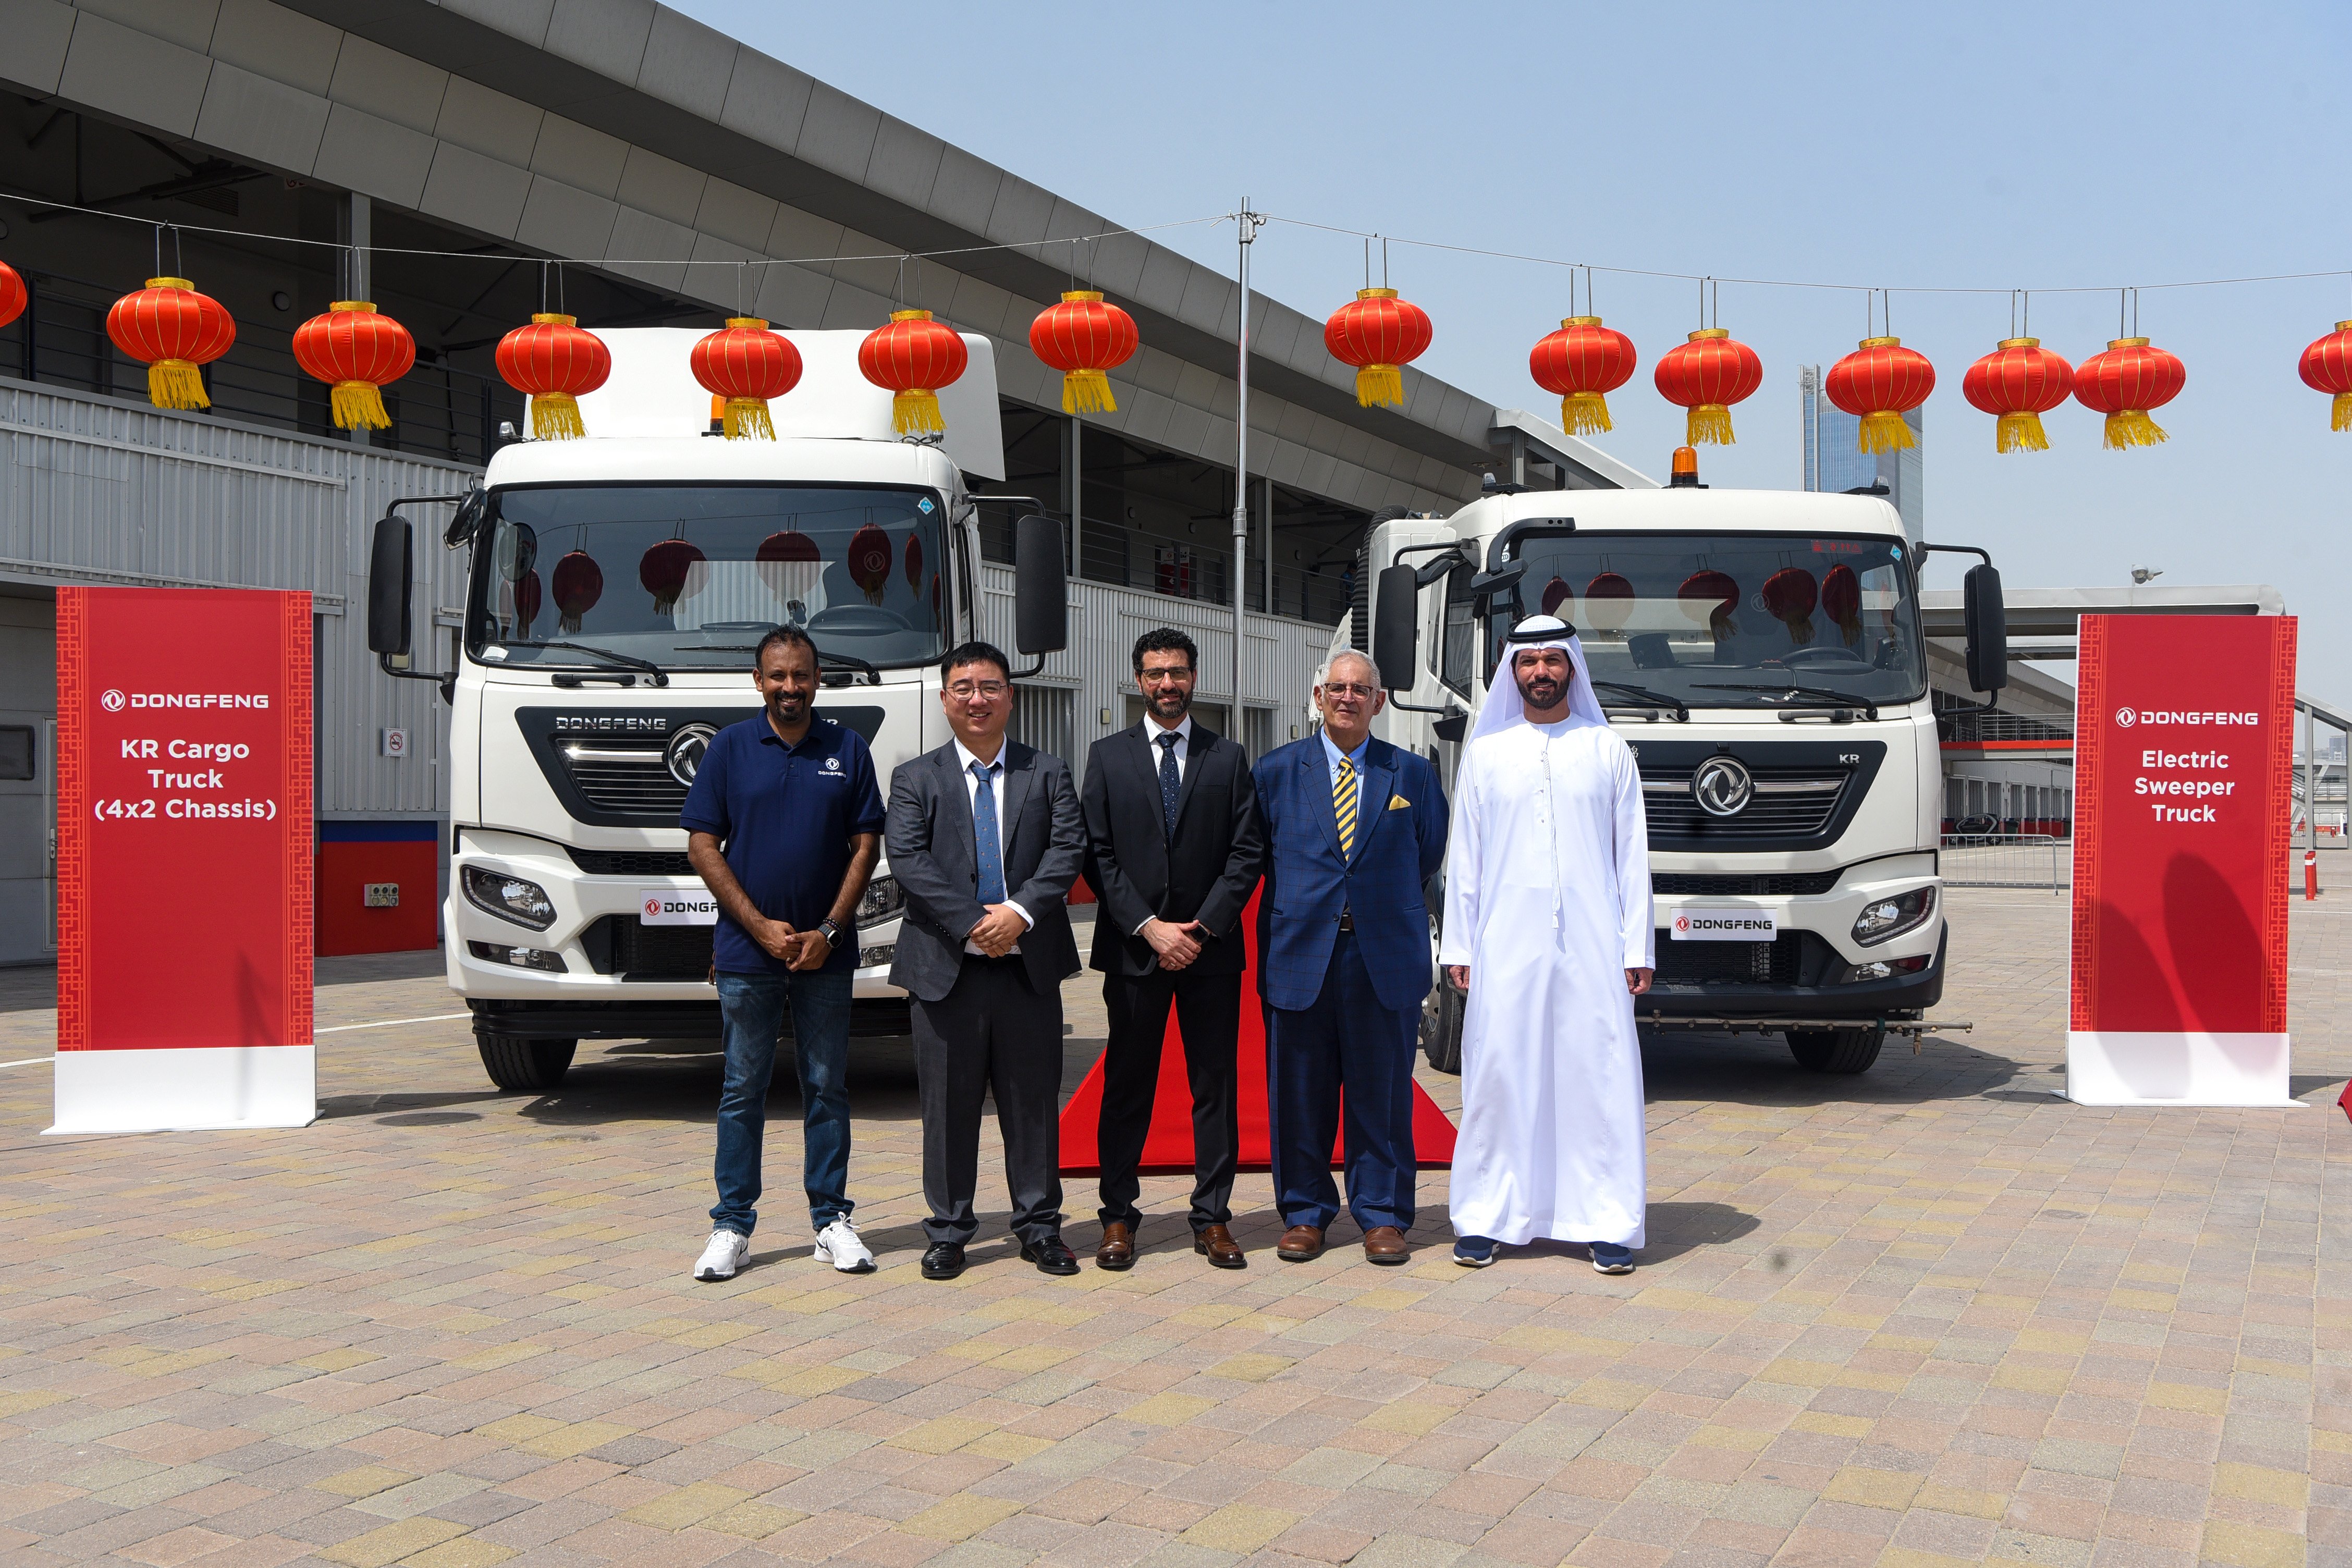 "مجموعة المسعود" الموزع الحصري لمركبات وشاحنات علامة"دونج فونج" في الإمارات العربية المتحدة